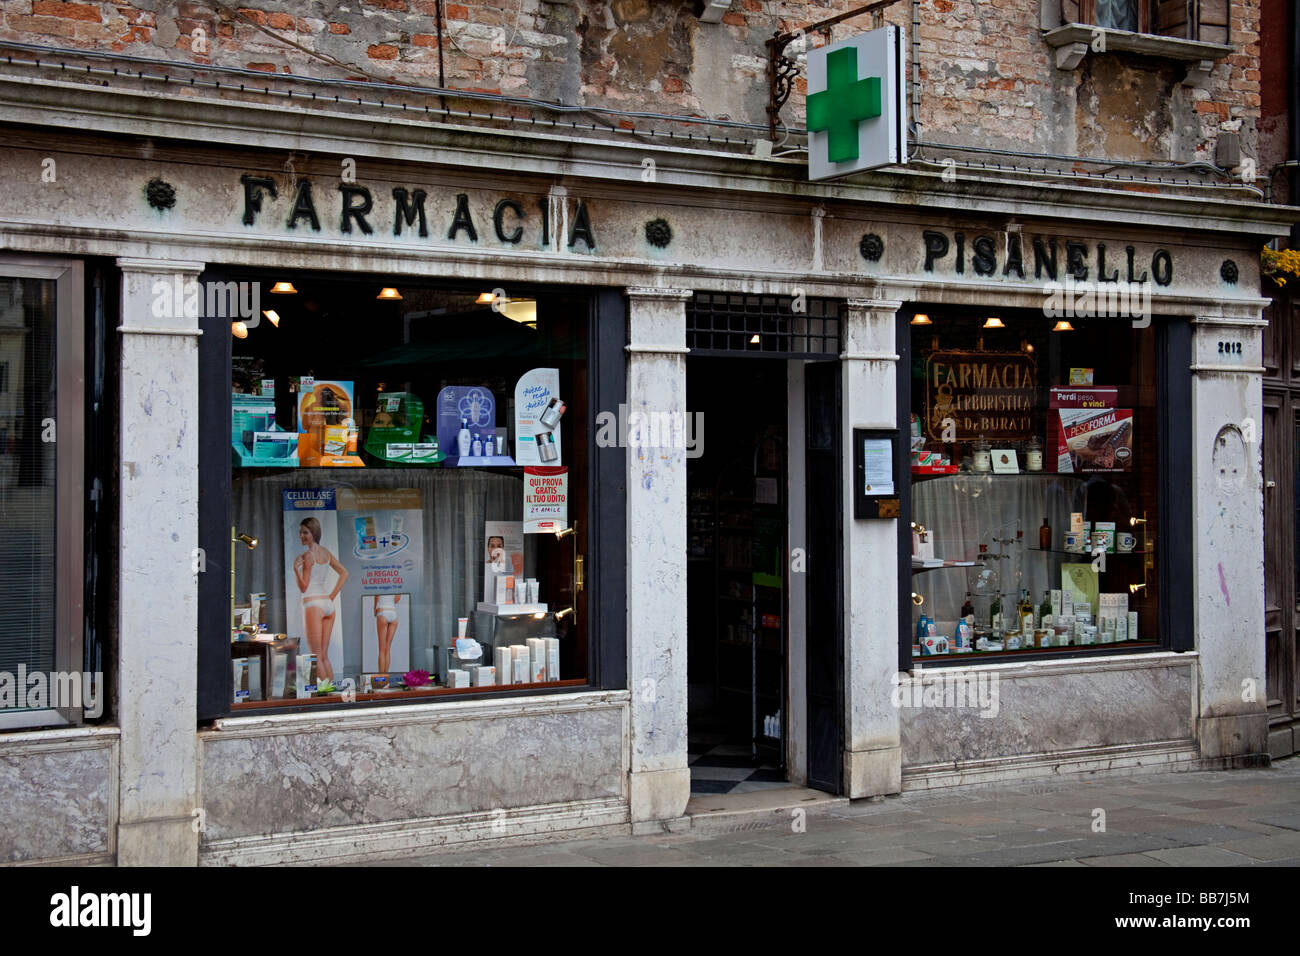 Altmodische rustikal aussehende Farmacia Apotheke, Venedig Italien Stockfoto